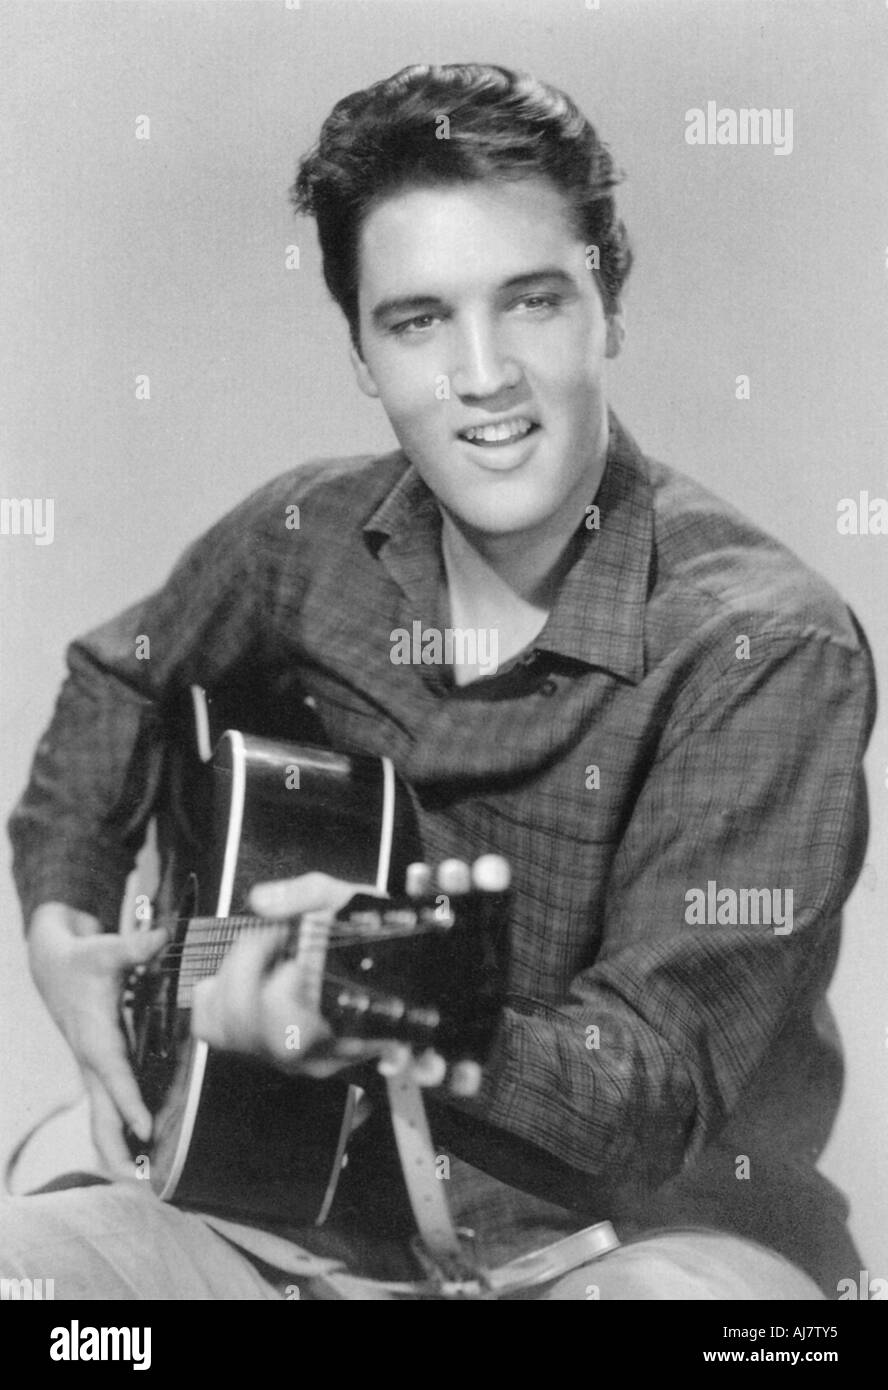 Elvis Presley, chanteur et acteur américain, 1950. Artiste : Inconnu Banque D'Images